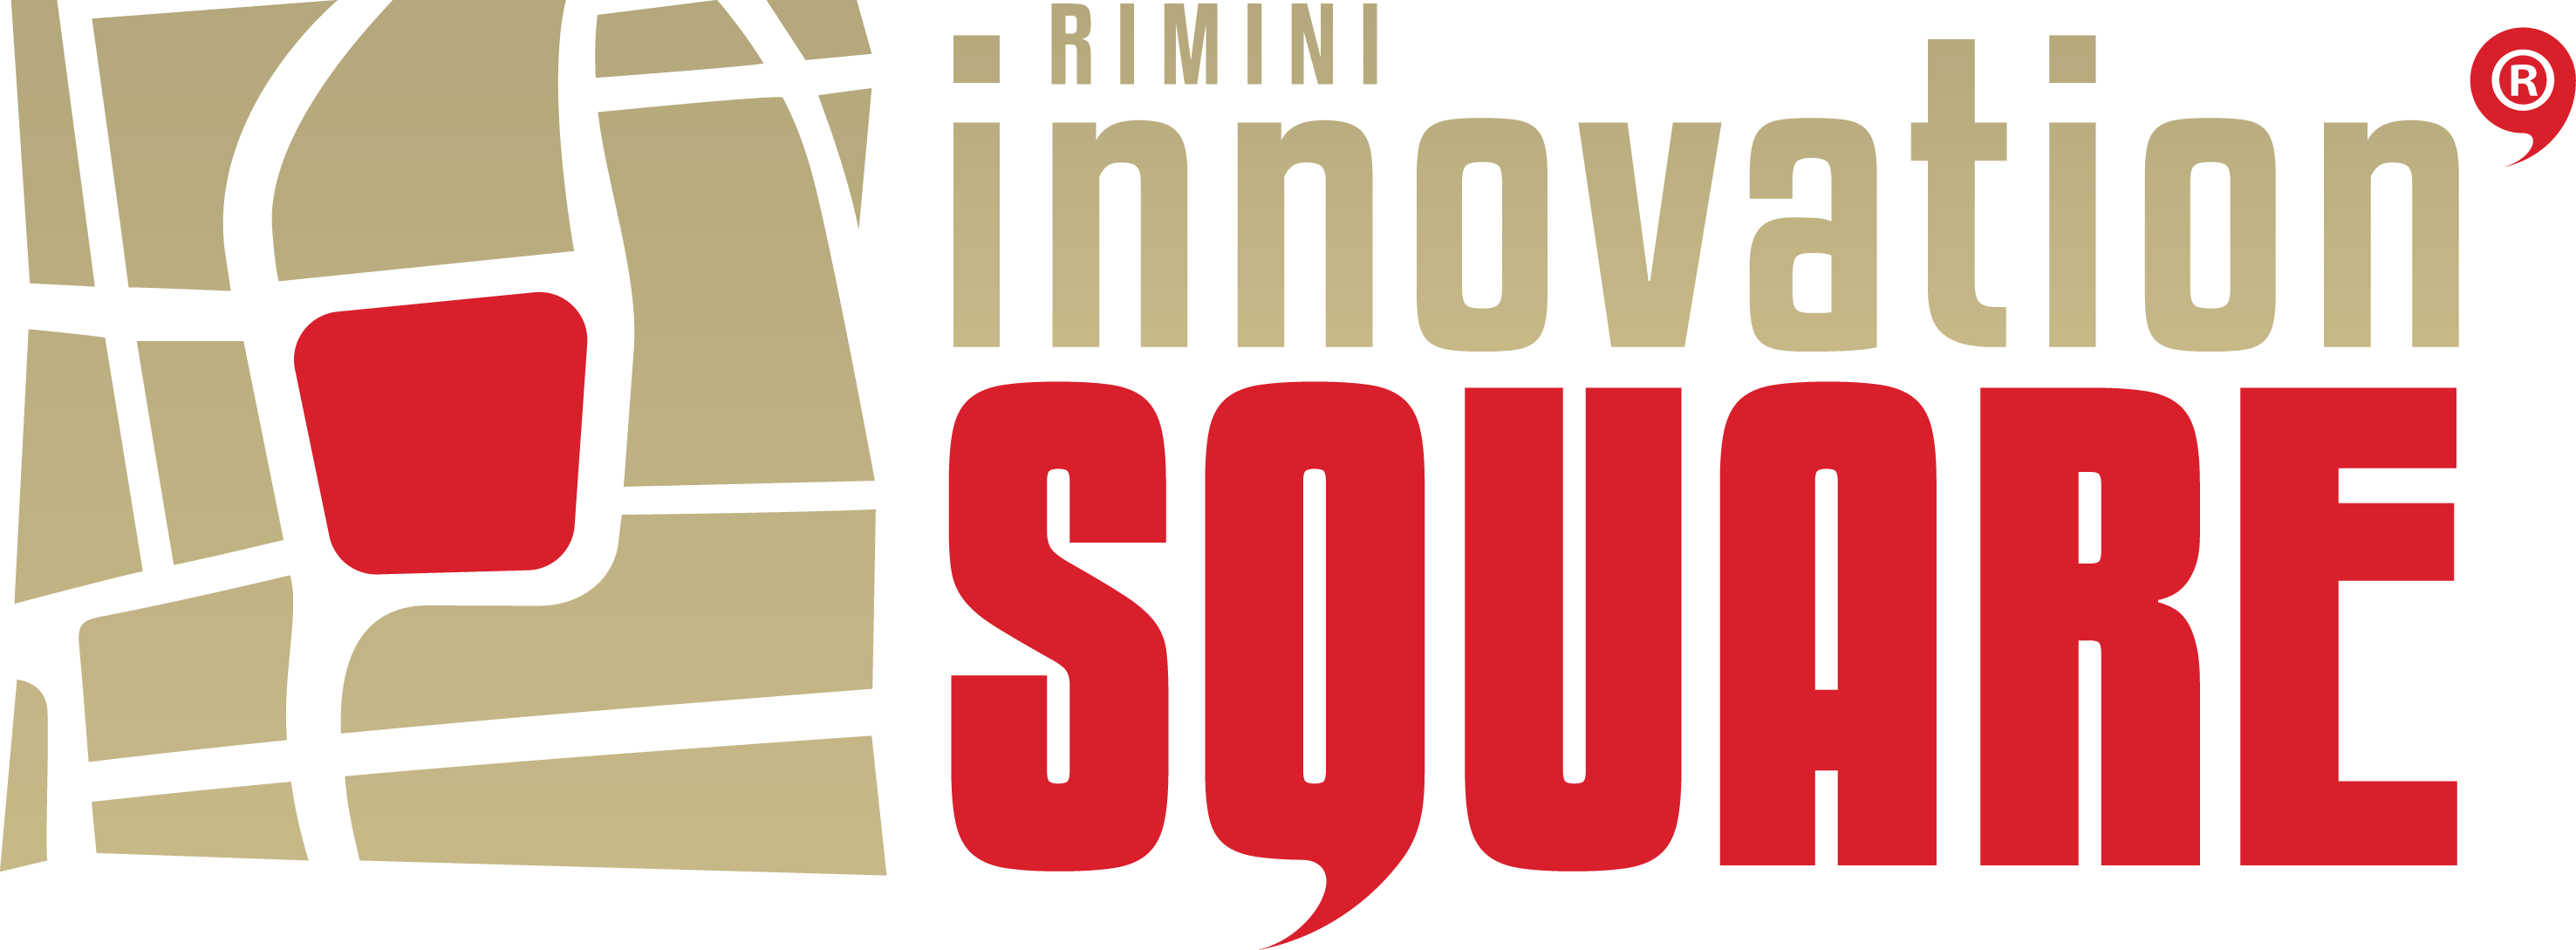 Logo Rimini Innovation Square